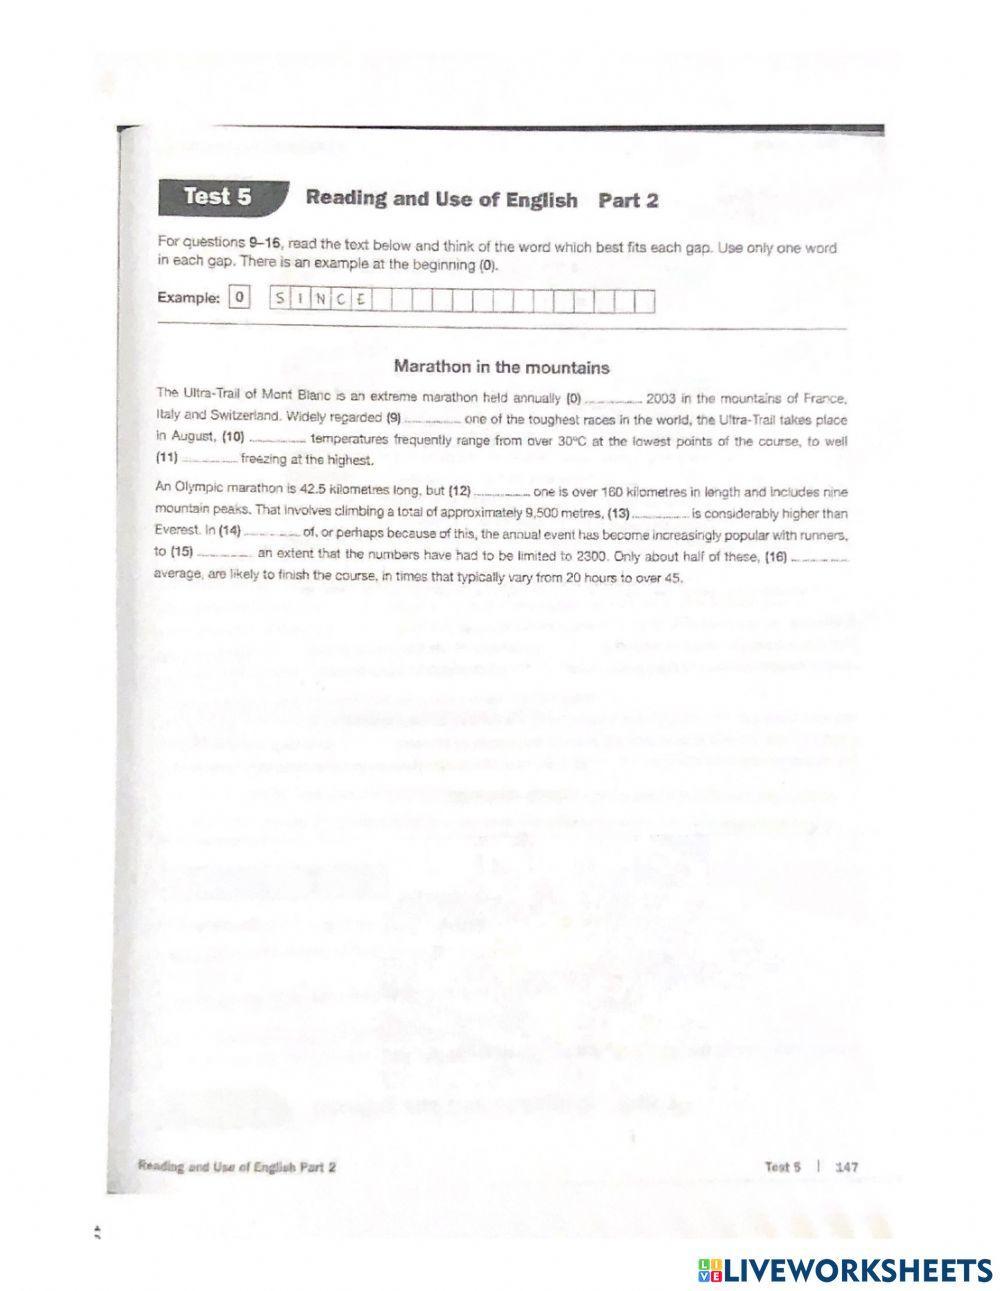 Test 5 page 102 part 1 thru 4